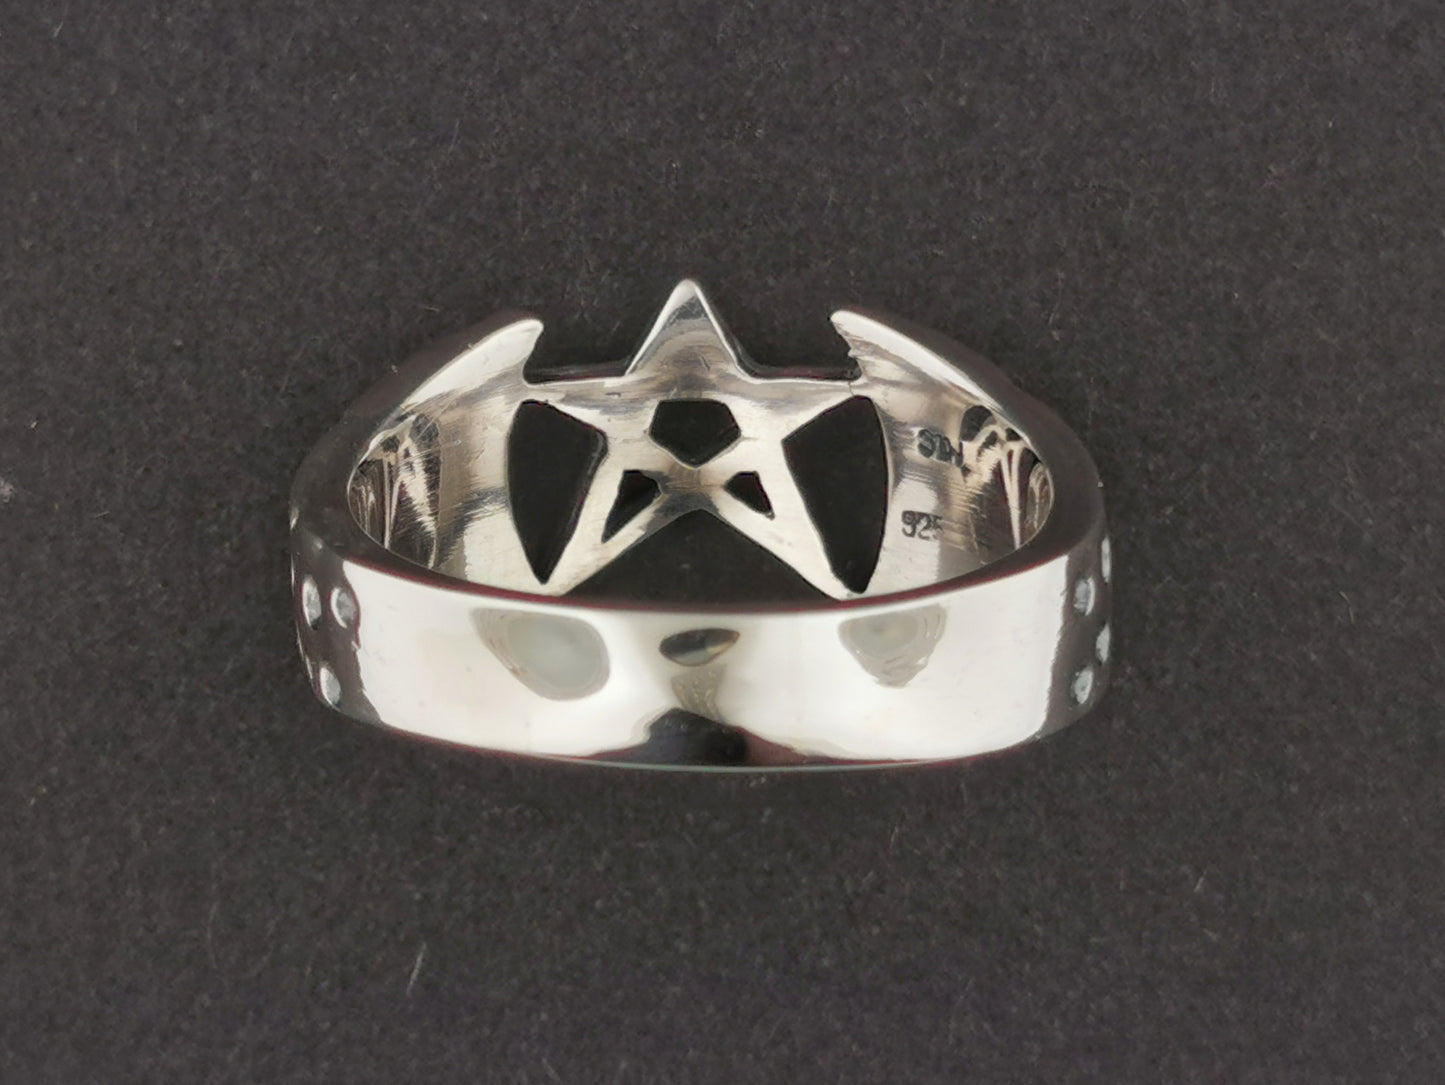 Mens Large Pentagram Ring in Sterling Silver or Antique Bronze